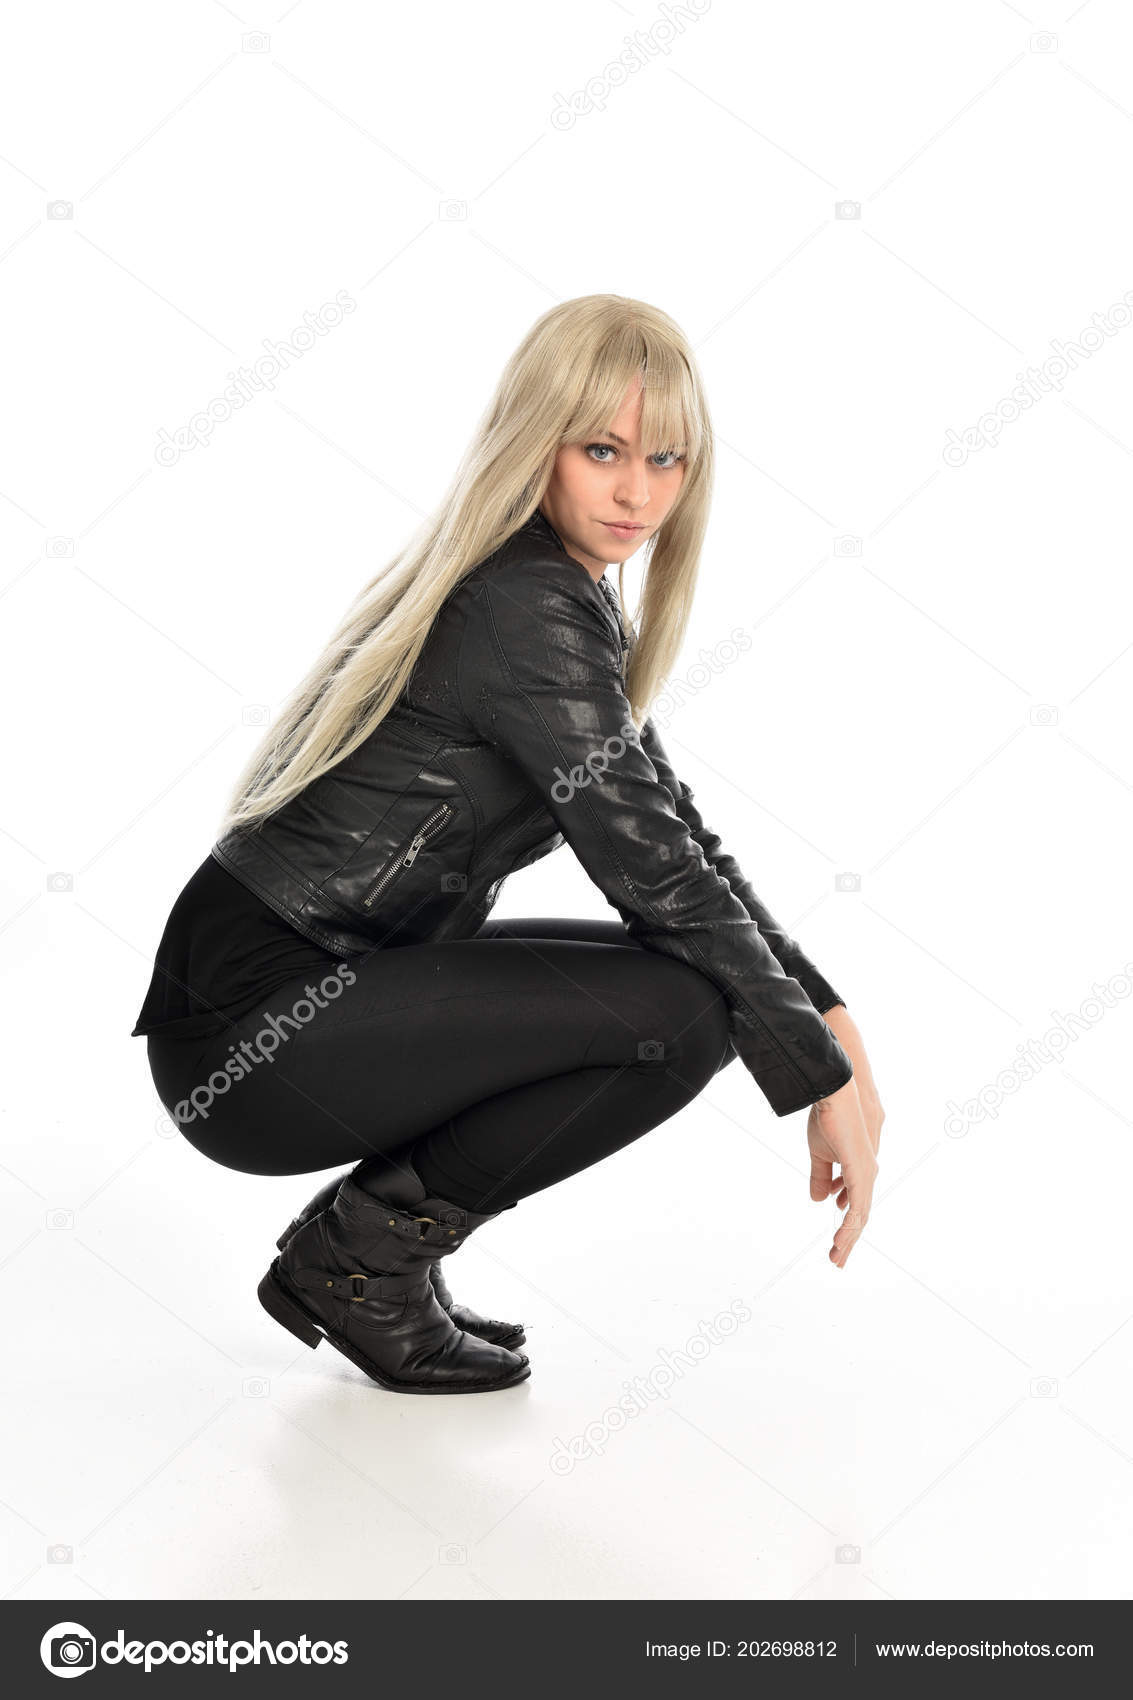 https://st4.depositphotos.com/15952980/20269/i/1600/depositphotos_202698812-stock-photo-full-length-portrait-blonde-girl.jpg